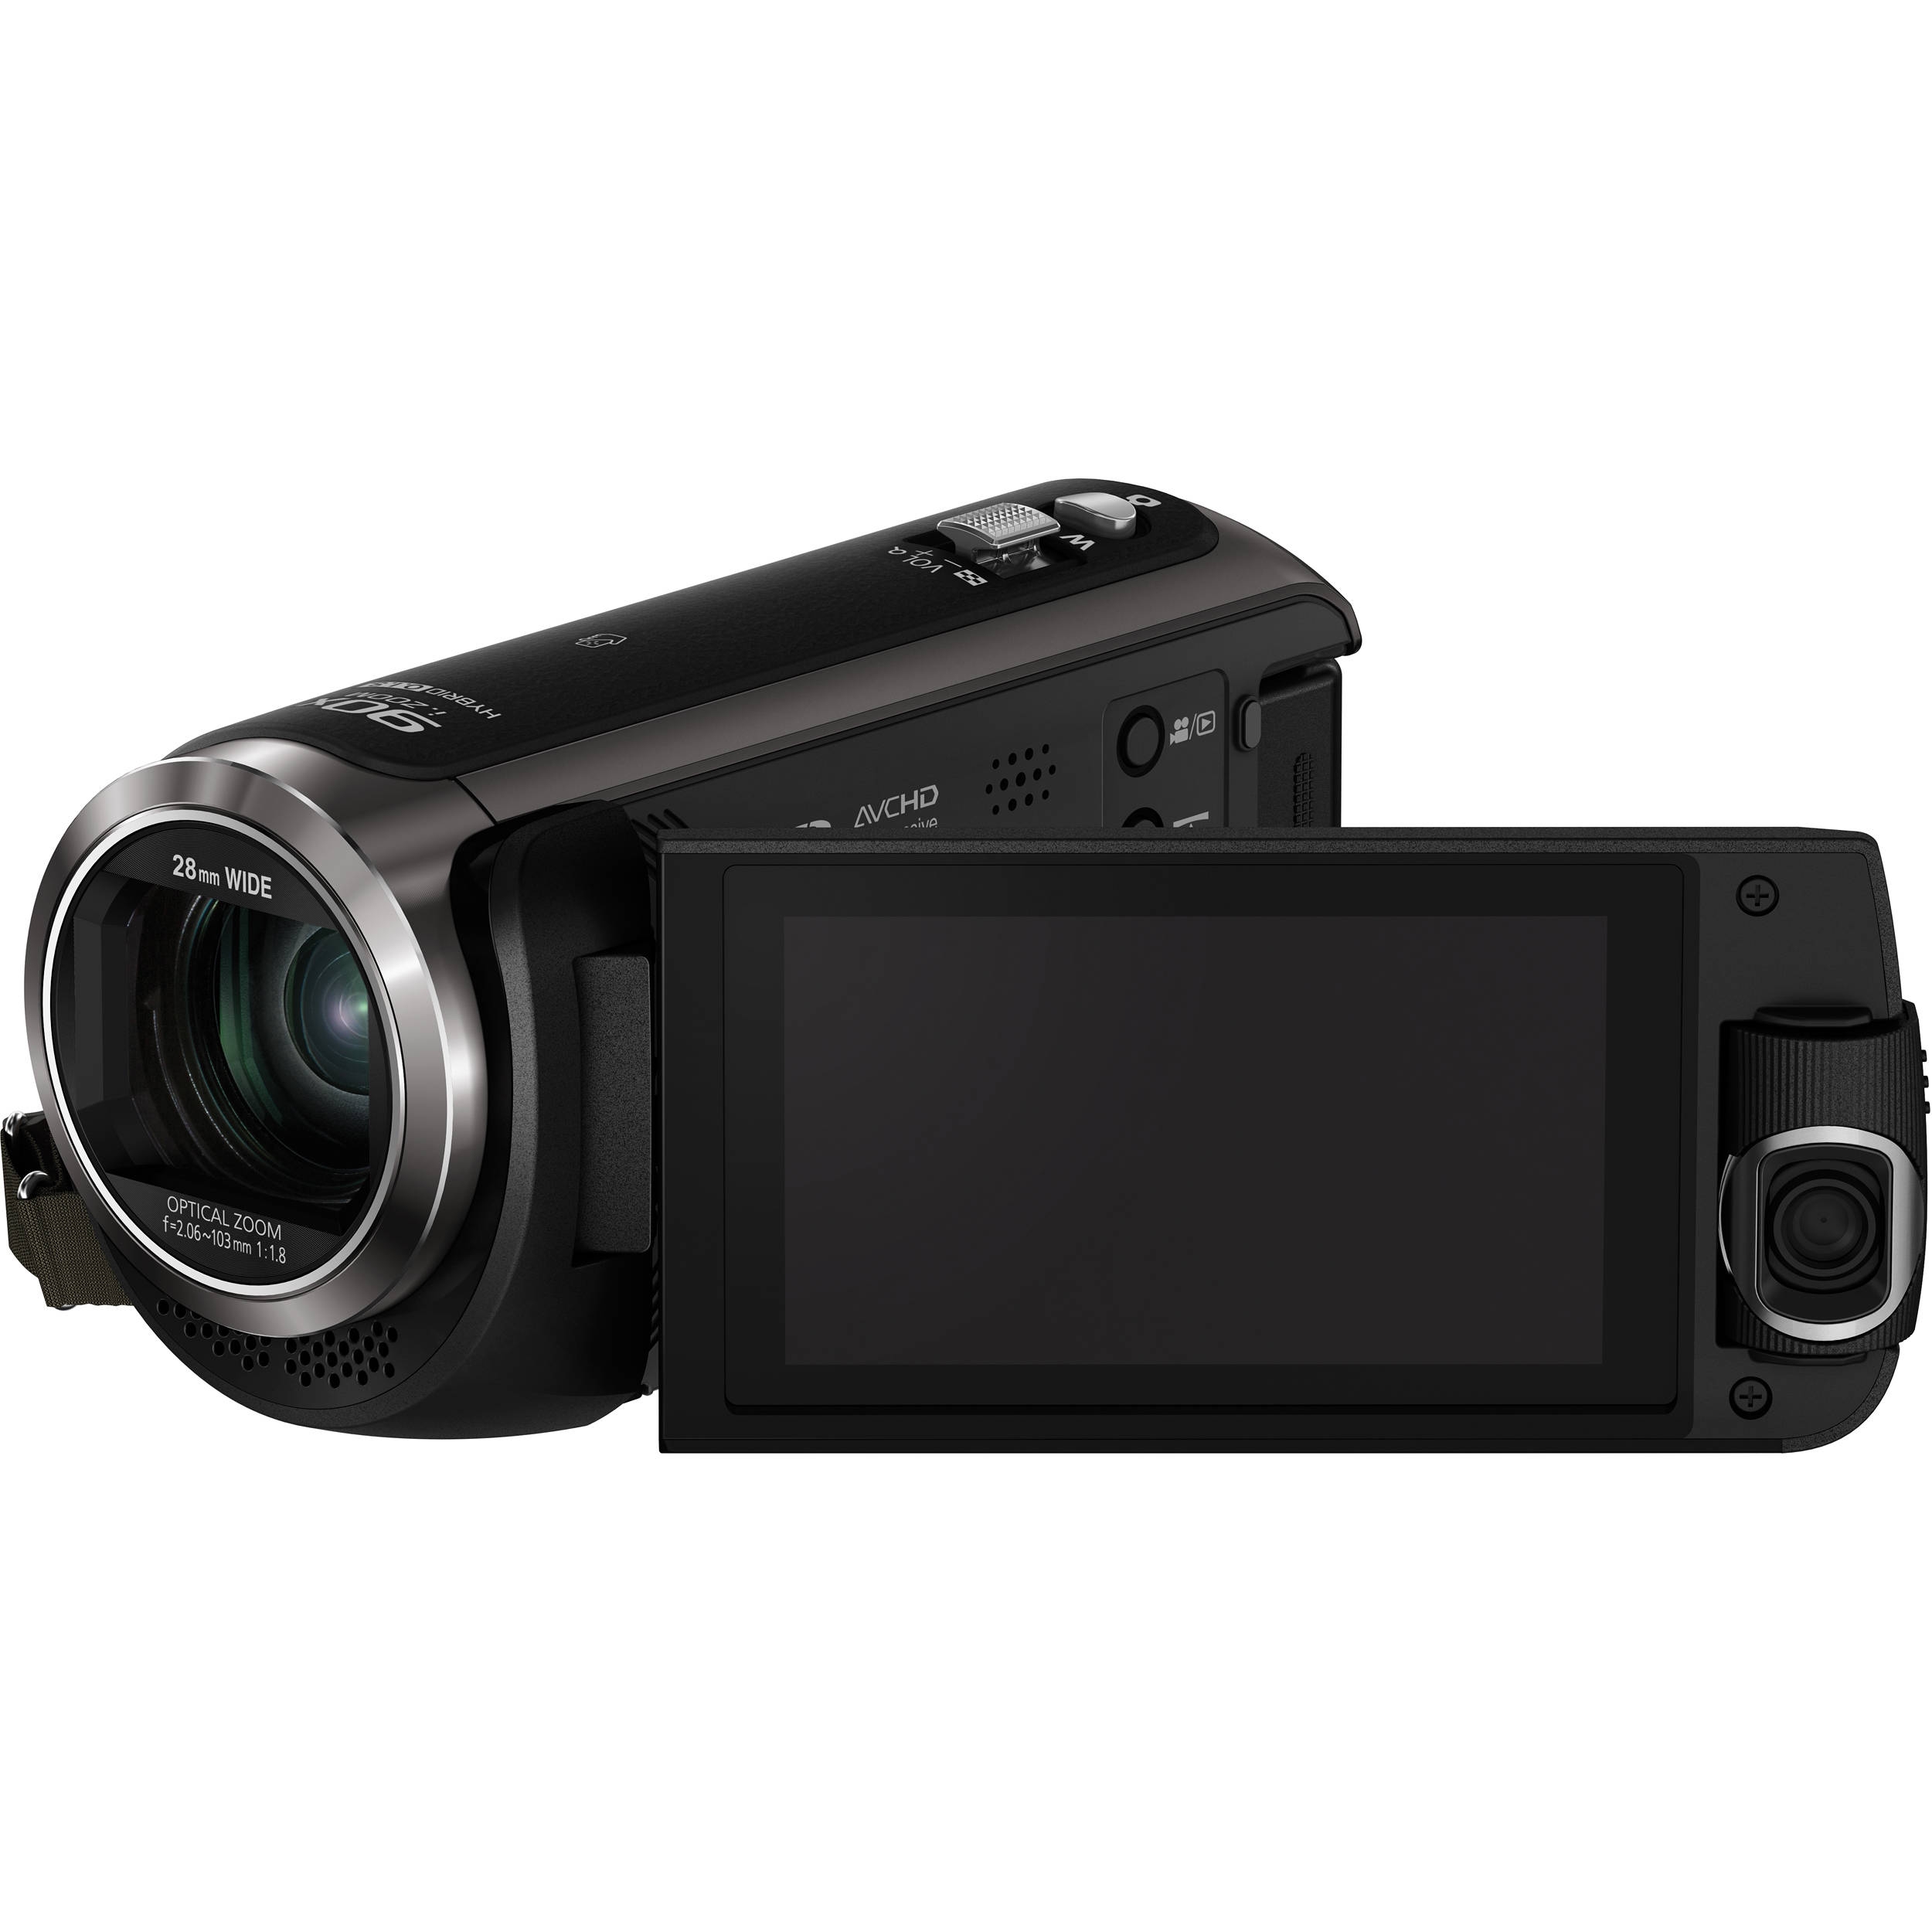 HC-W570  Videocamara Panasonic  HCW570 repuestos y accesorios